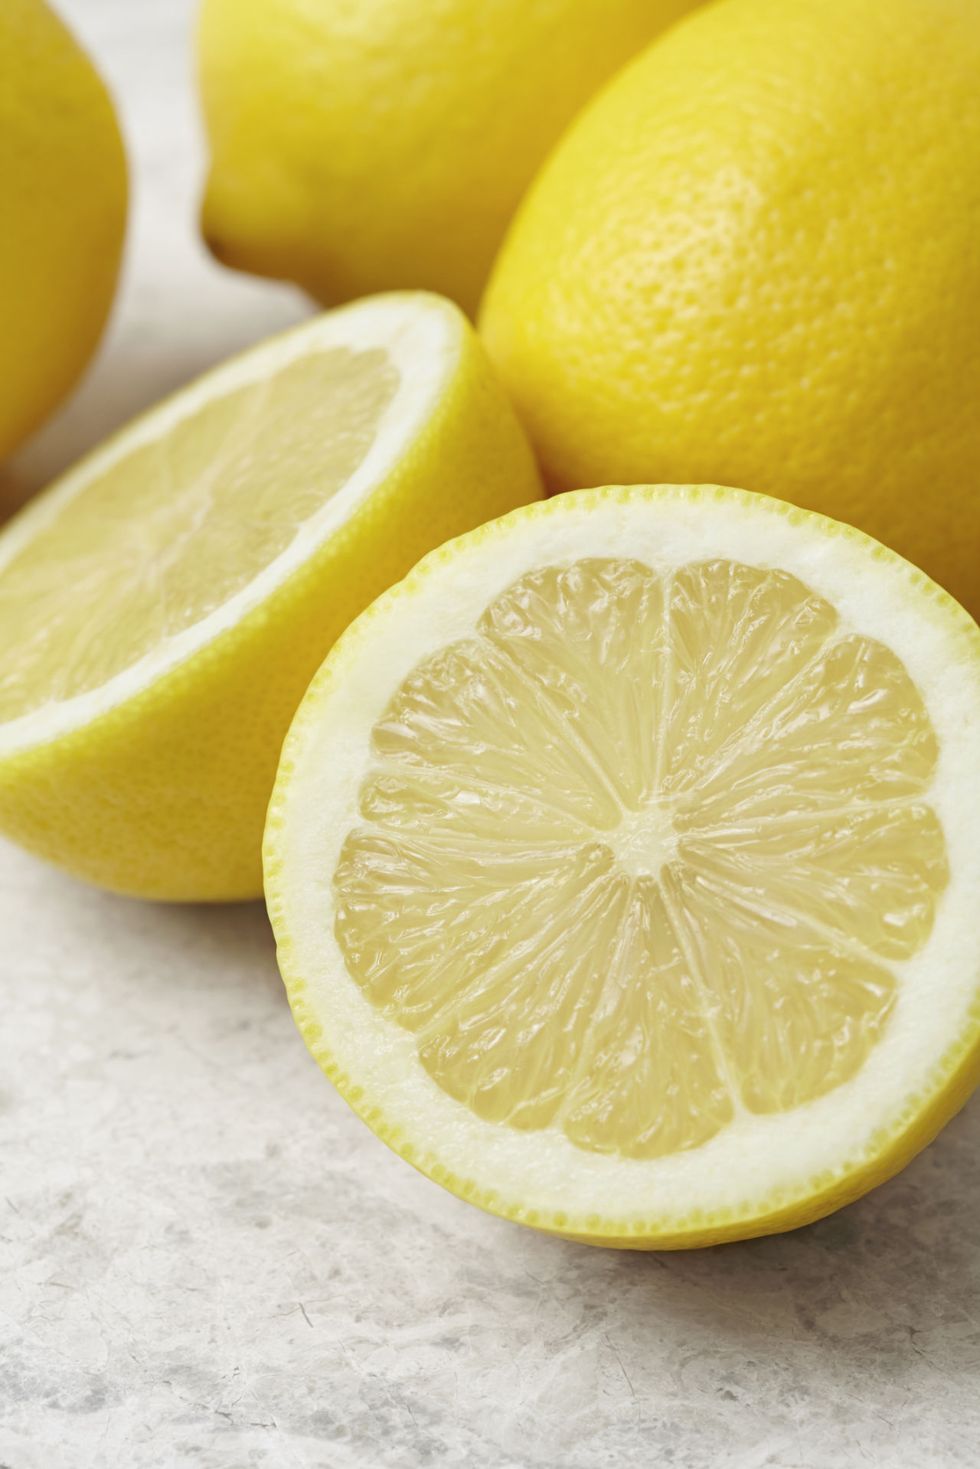 <p>Per combattere la forfora, che può dipendere da vari fattori, provate una miscela di succo di limone e olio di oliva. «L'acidità del succo di limone aiuta a liberare il cuoio capelluto dalla forfora presente sulla cute, mentre l'olio di oliva idrata la pelle», spiega Cox.</p><p><strong>Come si usa</strong>: preparate una miscela con 2 cucchiai di succo fresco di limone, 2 di olio d'oliva e 2 di acqua e massaggiate il cuoio capelluto già umido. Fate riposare per 20 minuti, quindi risciacquate e lavate i capelli con lo shampoo. Si può ricorrere a questo trattamento ogni 2 settimane.</p>